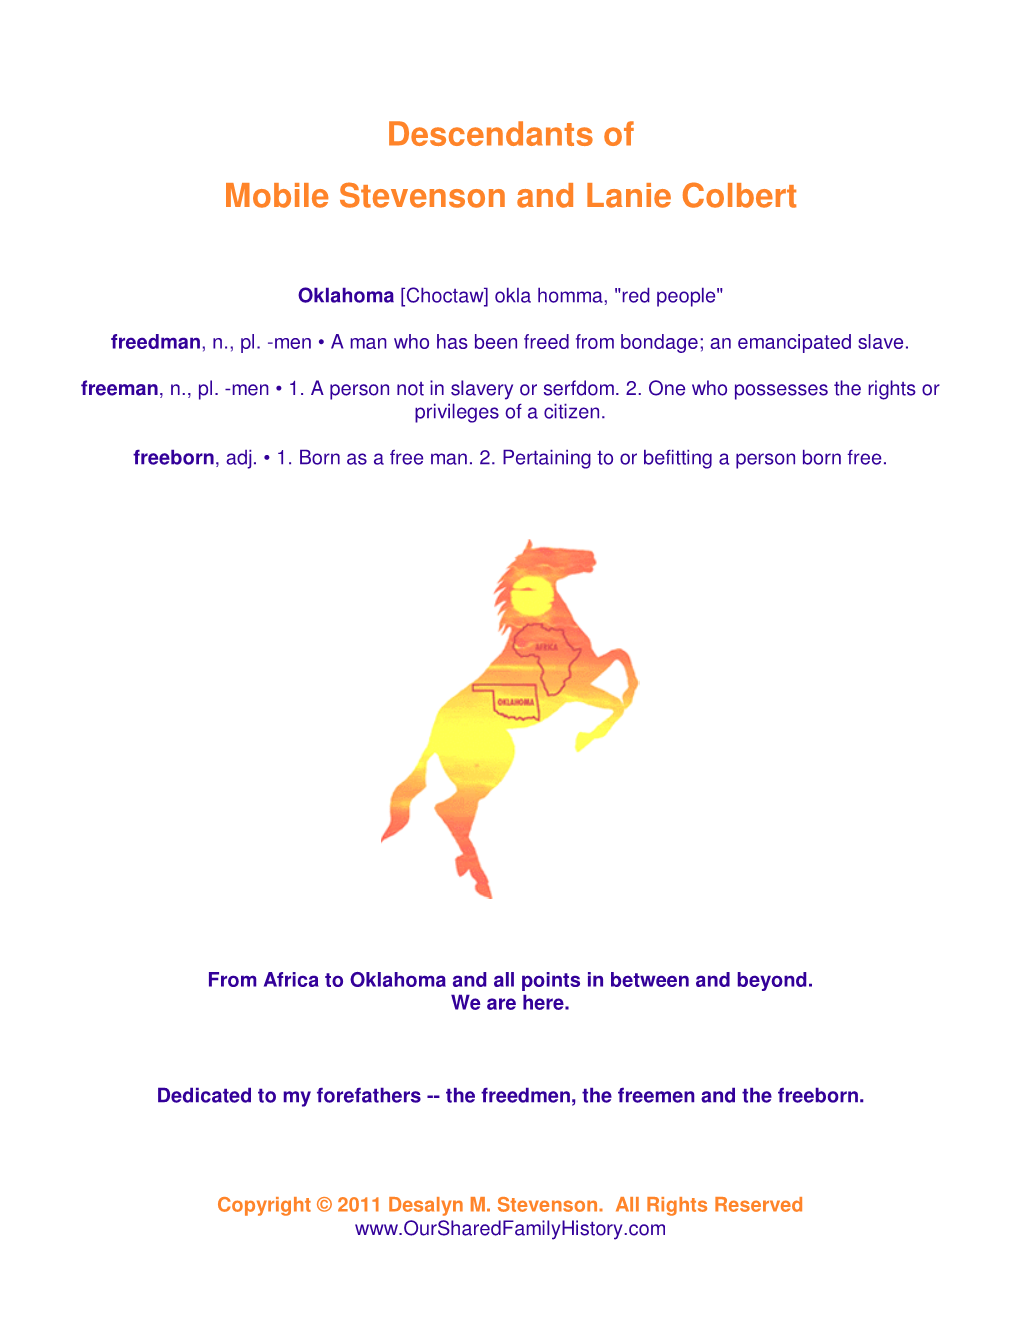 Descendants of Mobile Stevenson and Lanie Colbert